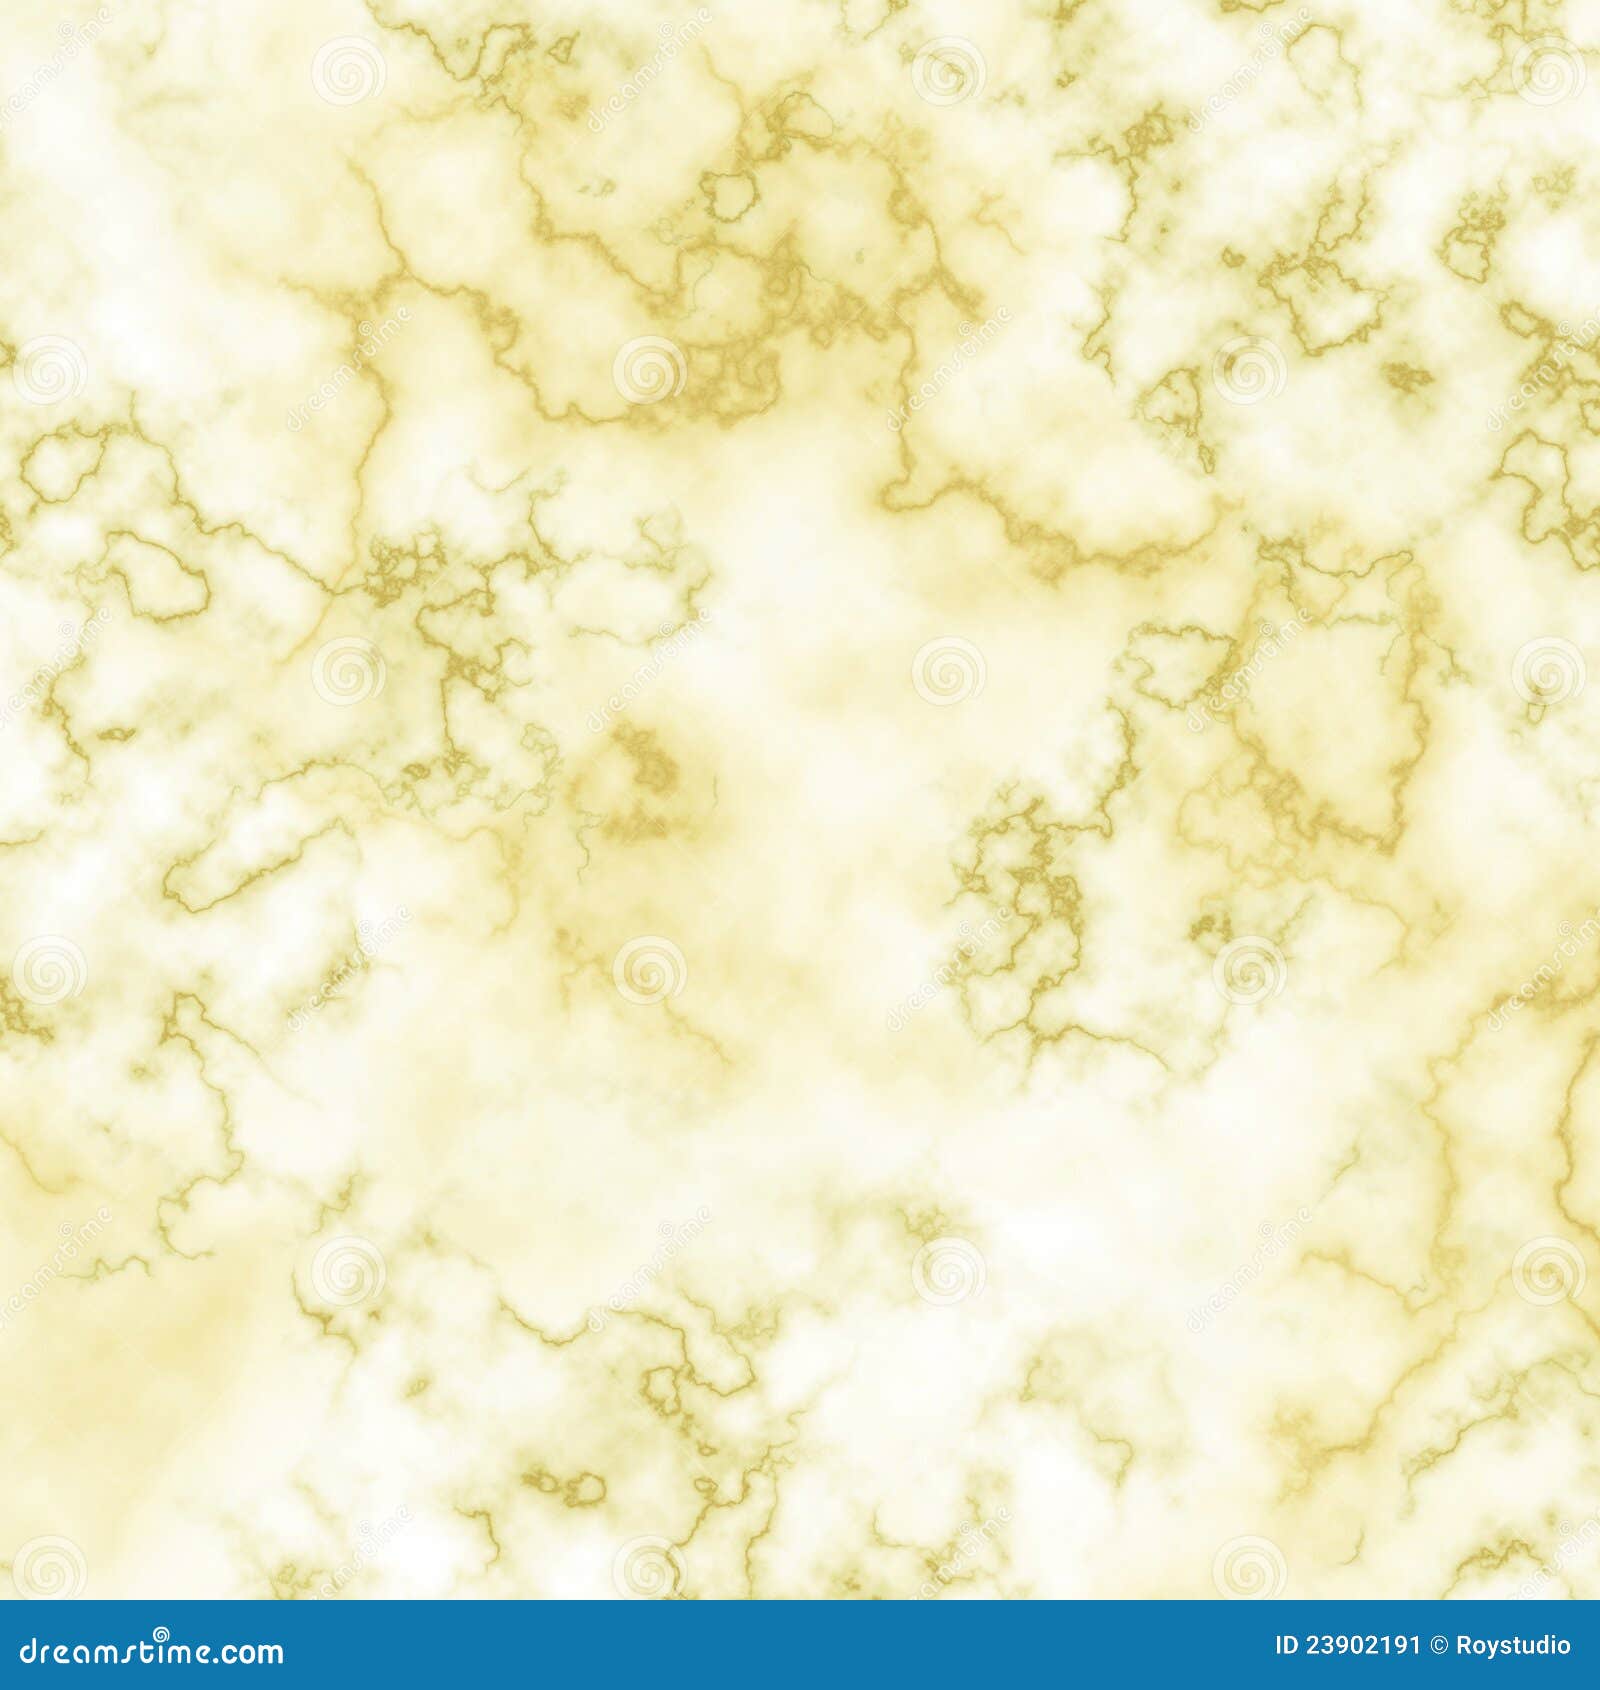 White Yellow Marble Texture Background Illustration 23902191 - Megapixl